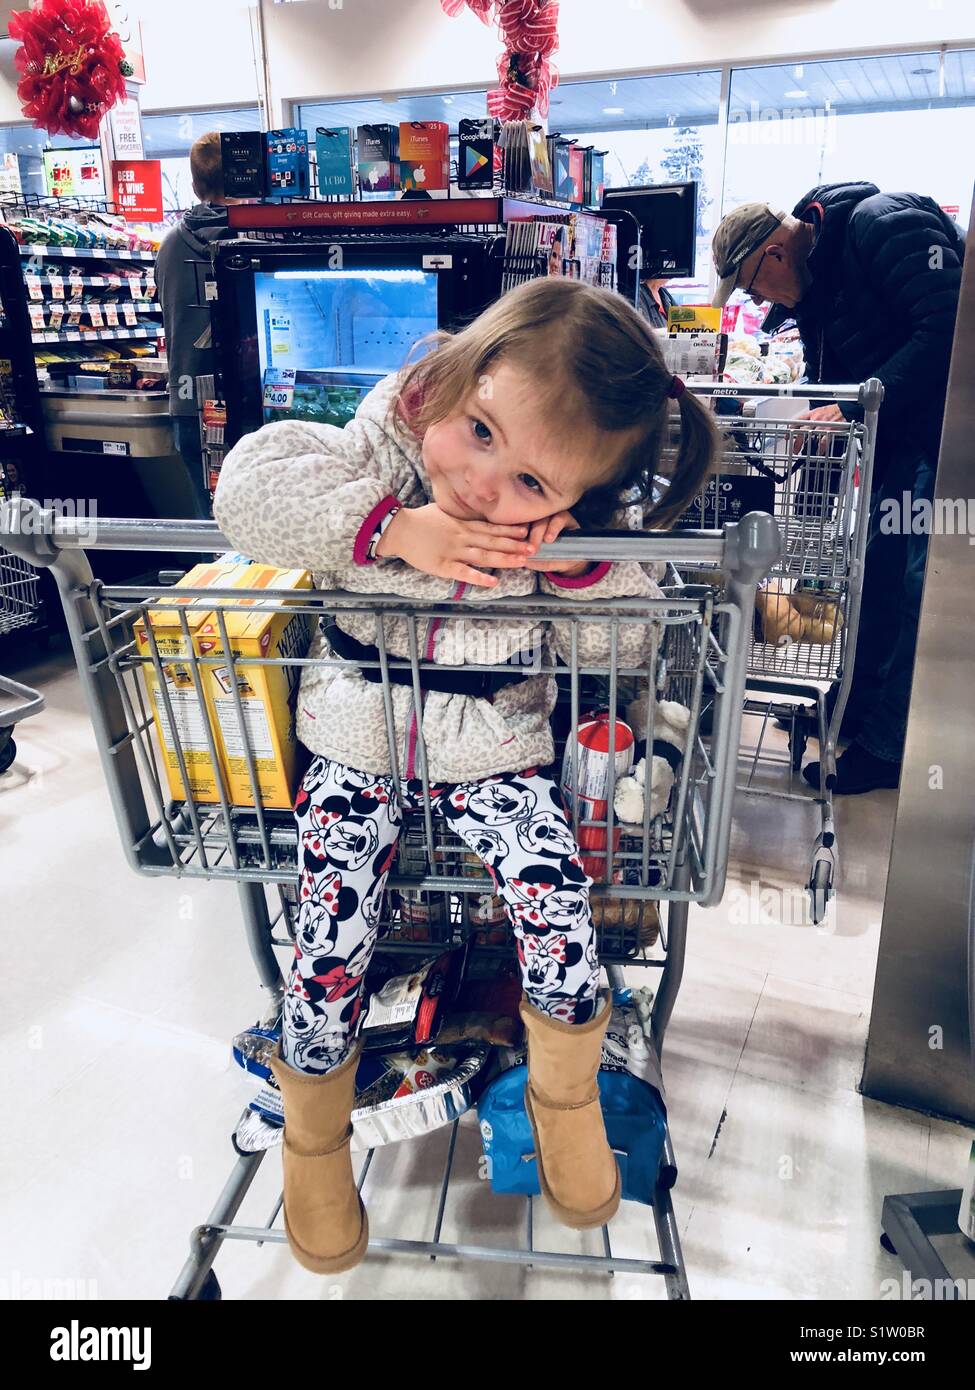 In der Schlange im Supermarkt mit einem Kleinkind Mädchen ihren Kopf in den Warenkorb ruhen und ein Mann vor im Einklang mit der Kasse Stockfoto